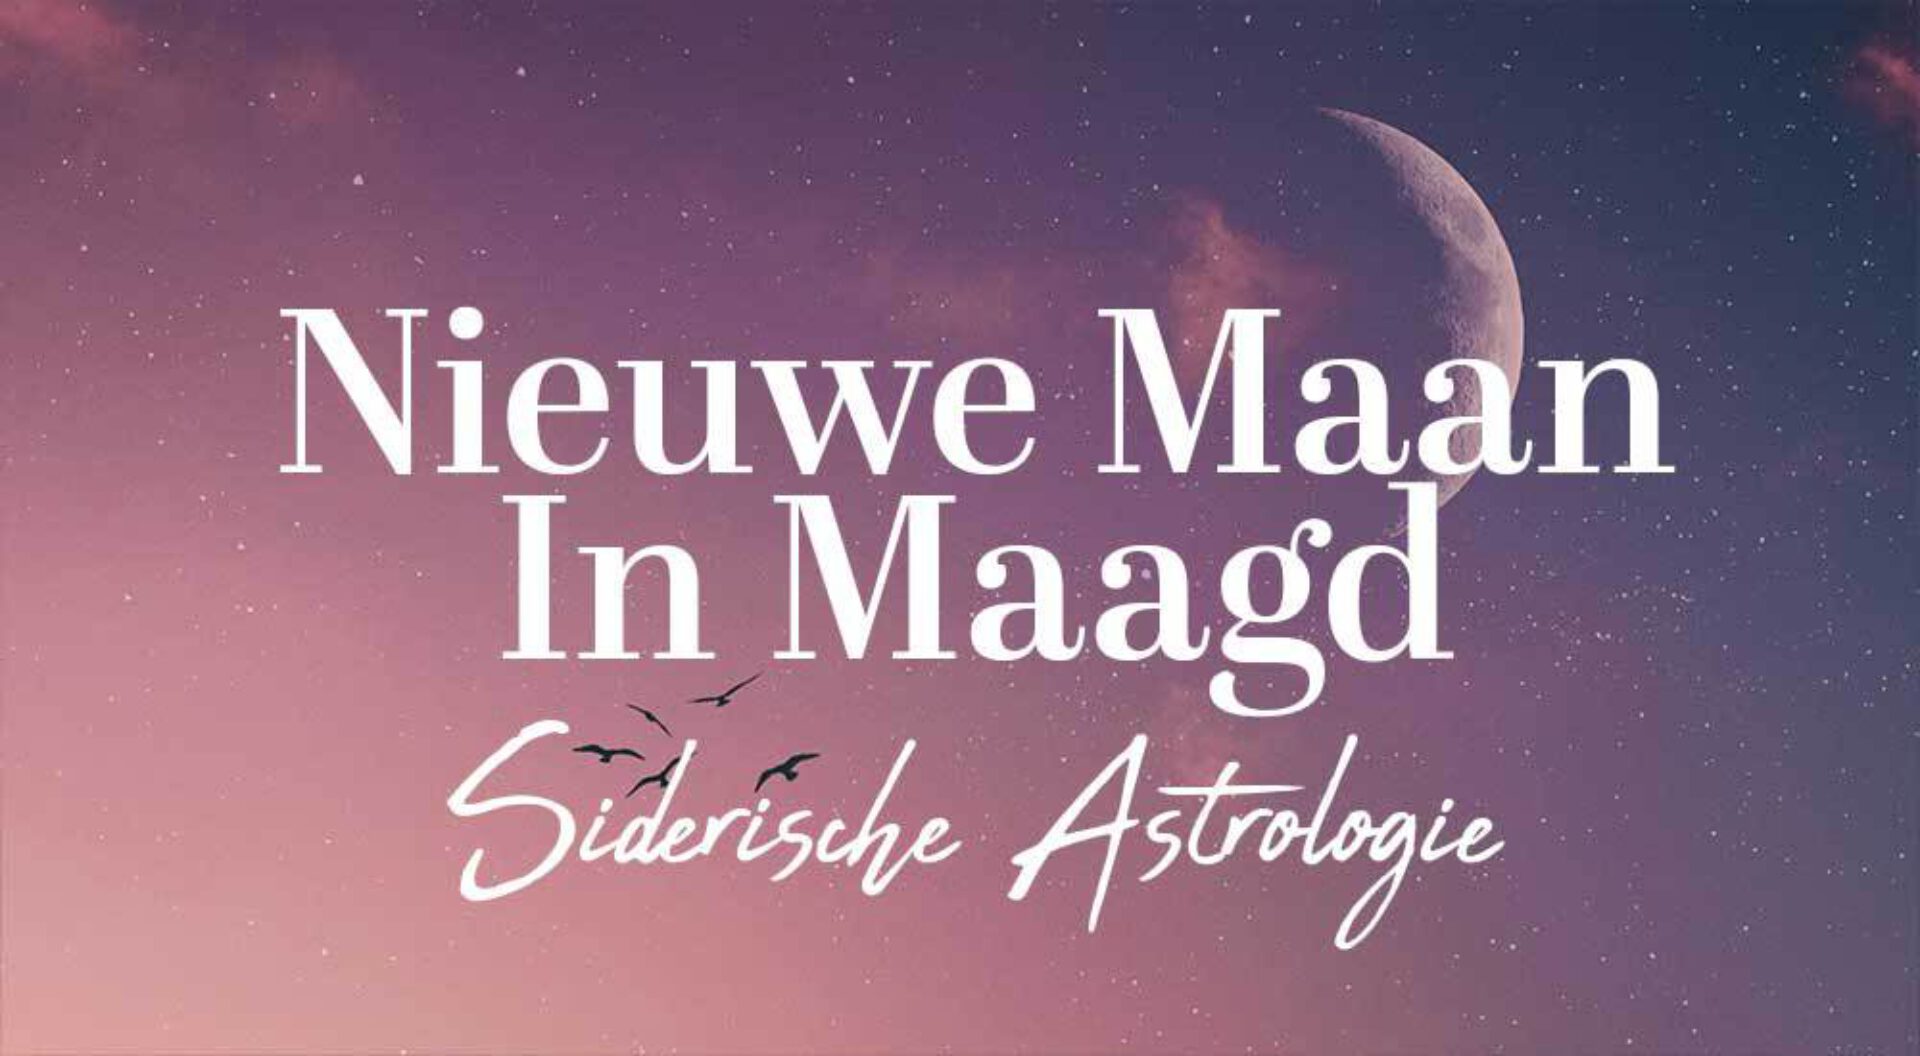 Siderische astrologie: de Nieuwe Maan in Maagd op 25 september 2022